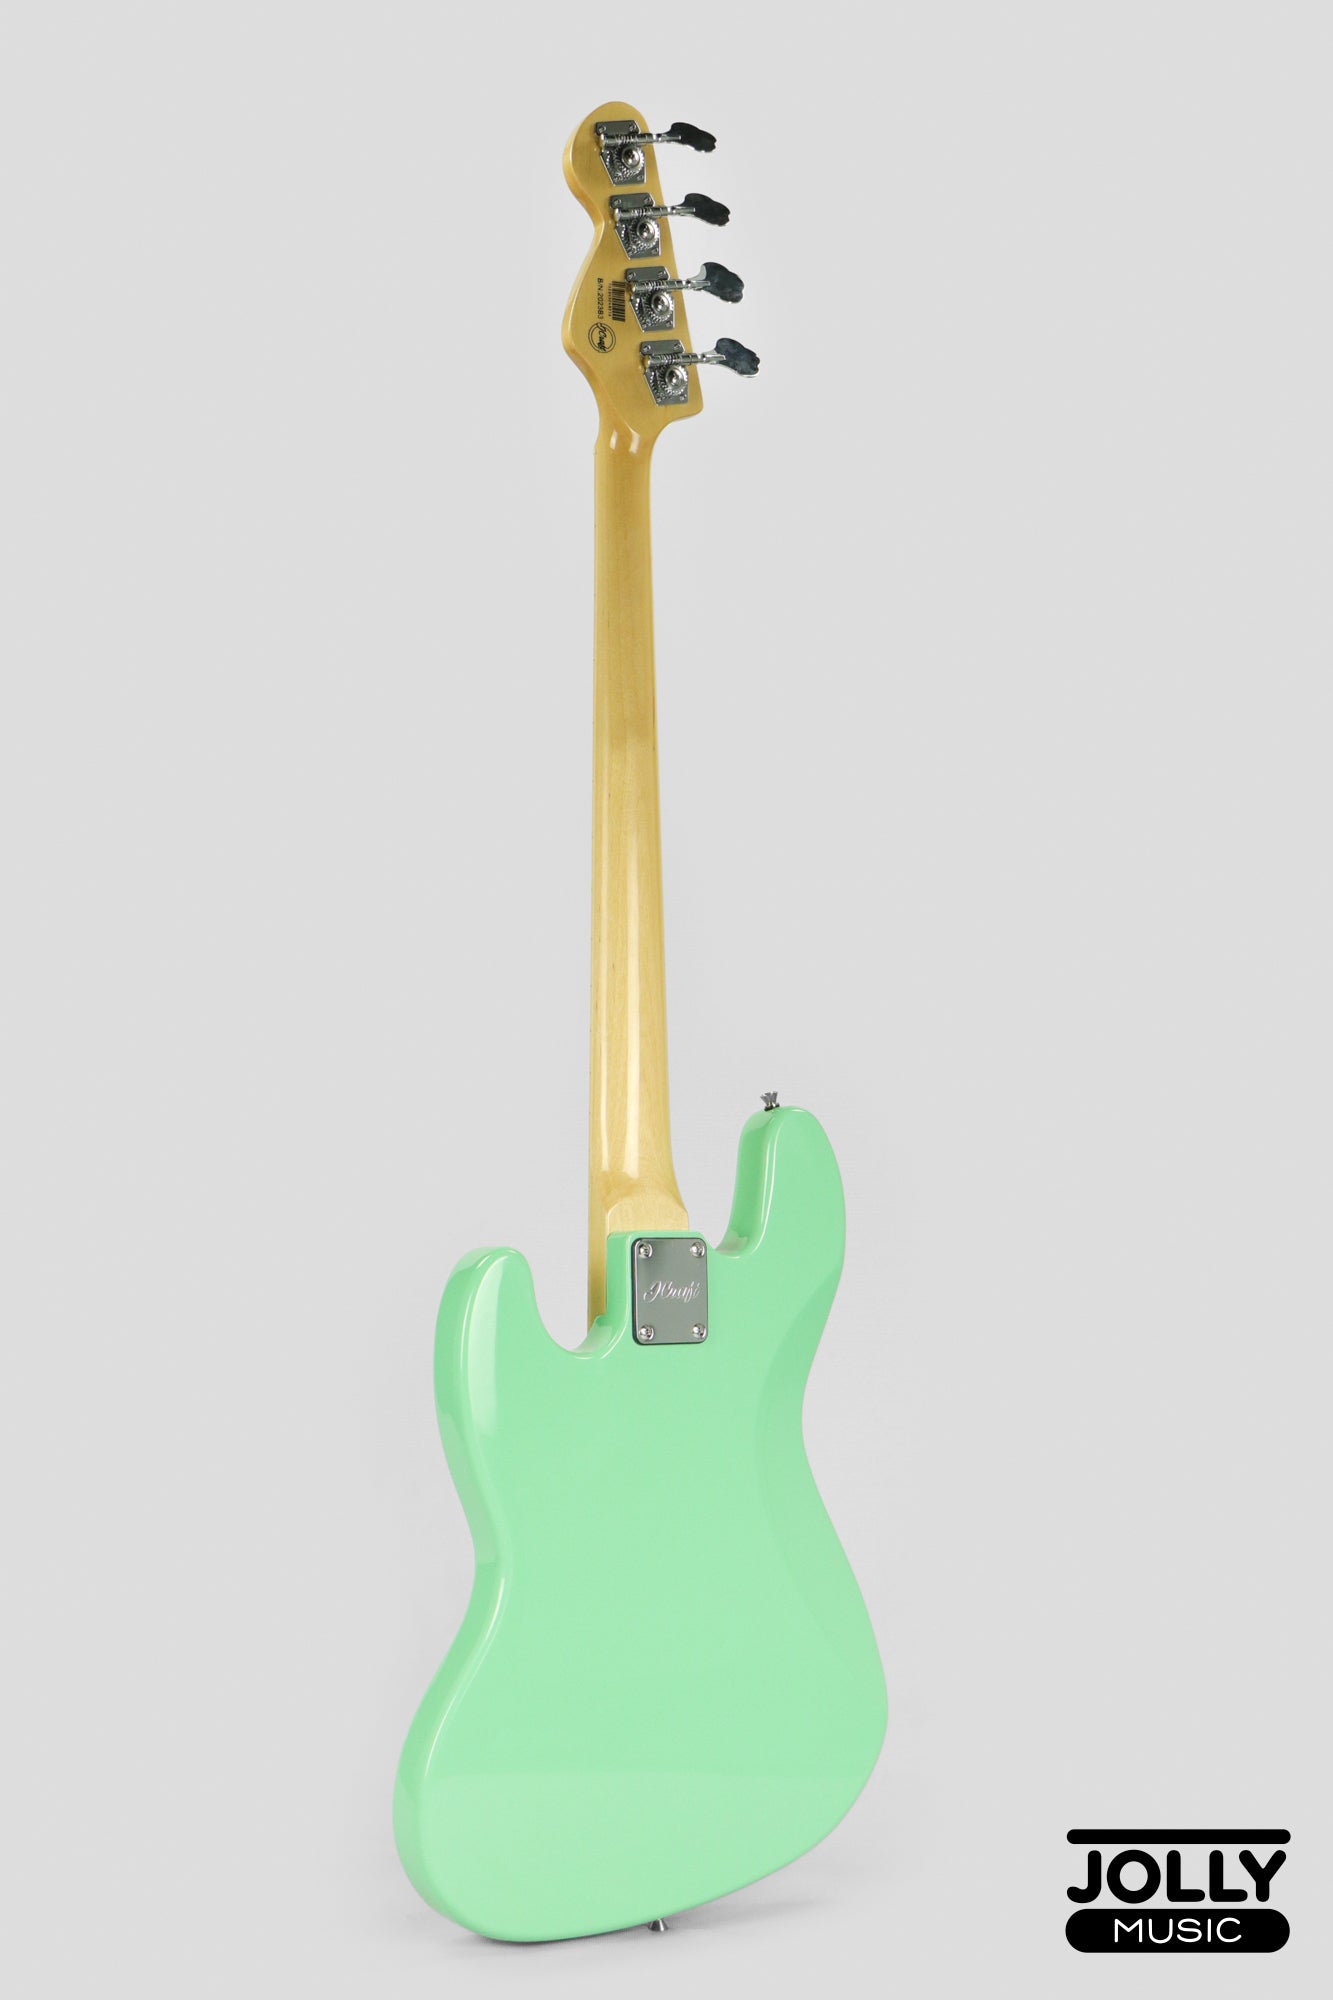 JCraft JB-1 J-Offset 4-String Bass Guitar with Gigbag - Surf Green